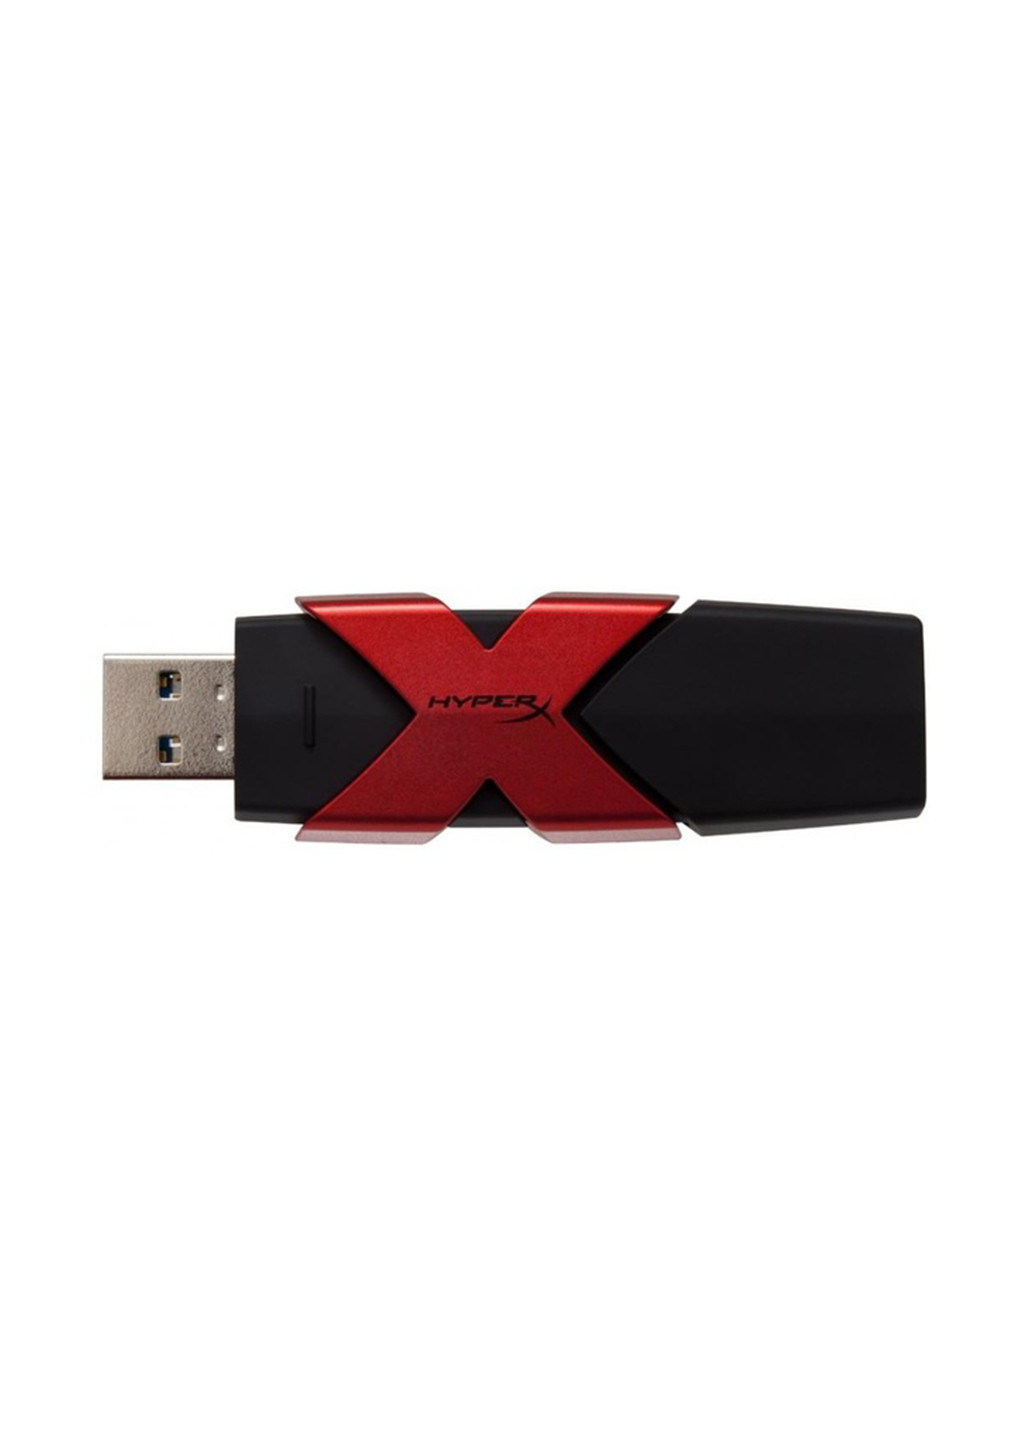 Флеш память USB HyperX Savage USB 3.1 64GB (HXS3/64GB) Kingston флеш память usb kingston hyperx savage usb 3.1 64gb (hxs3/64gb) (135165466)